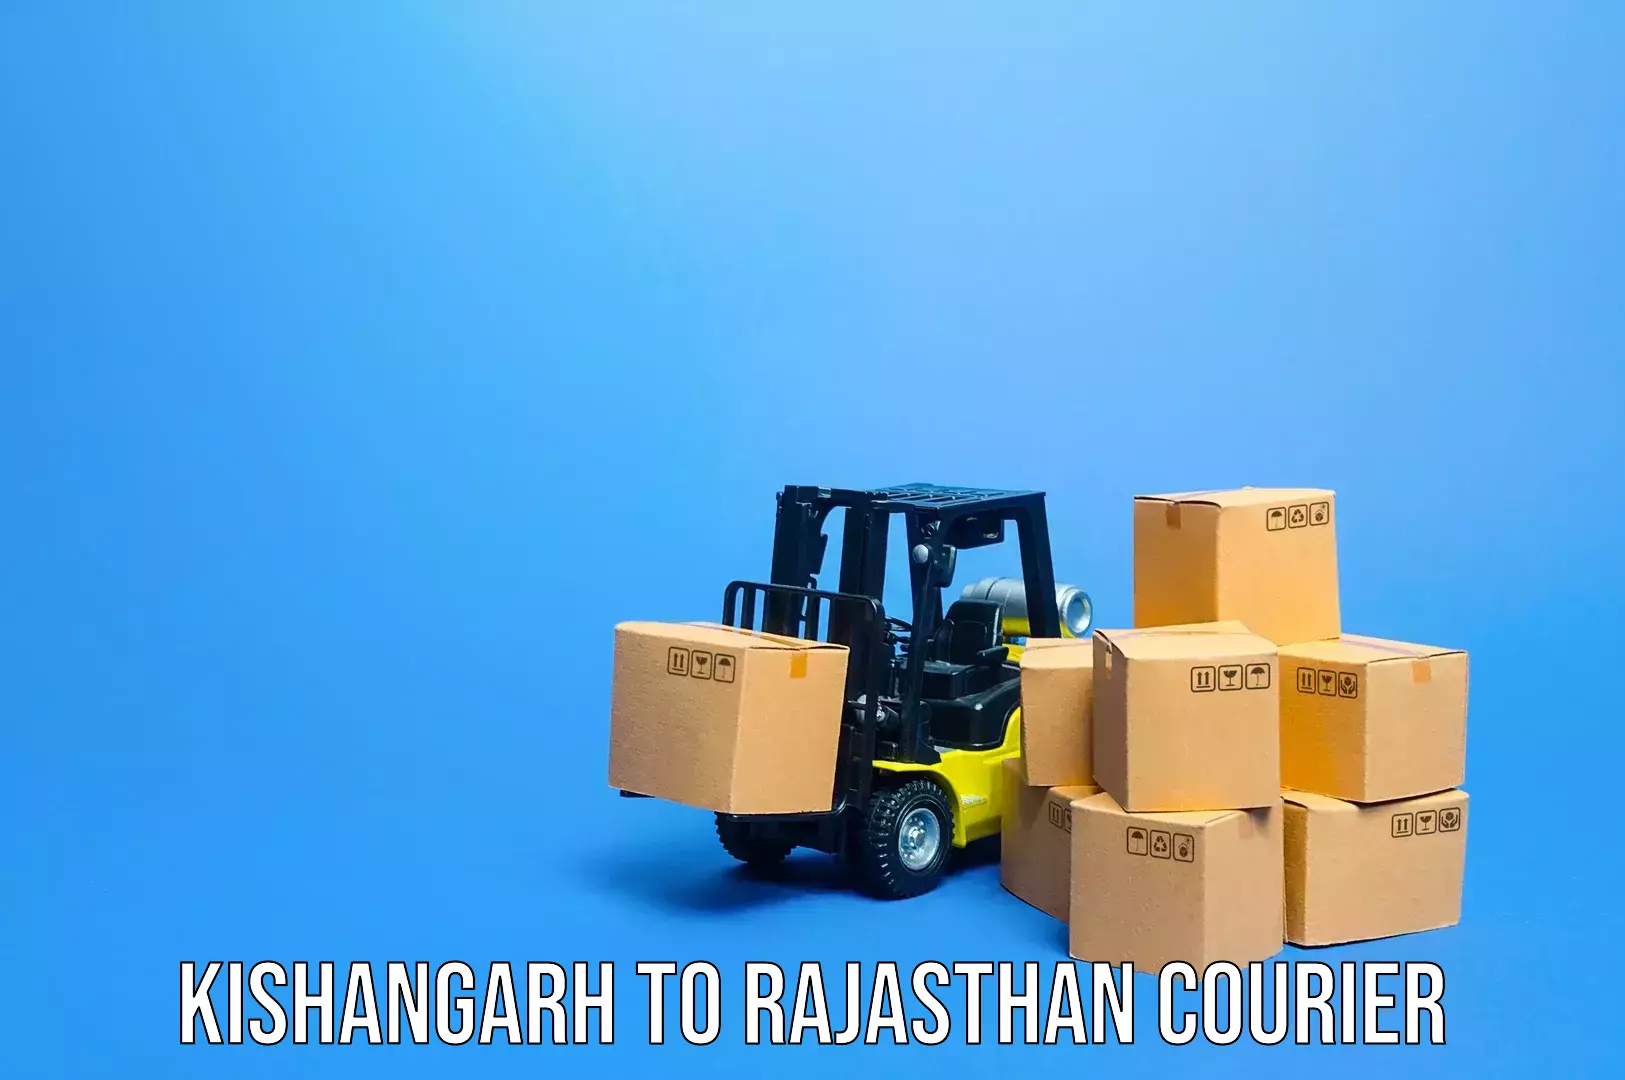 Luggage shipment tracking Kishangarh to Buhana